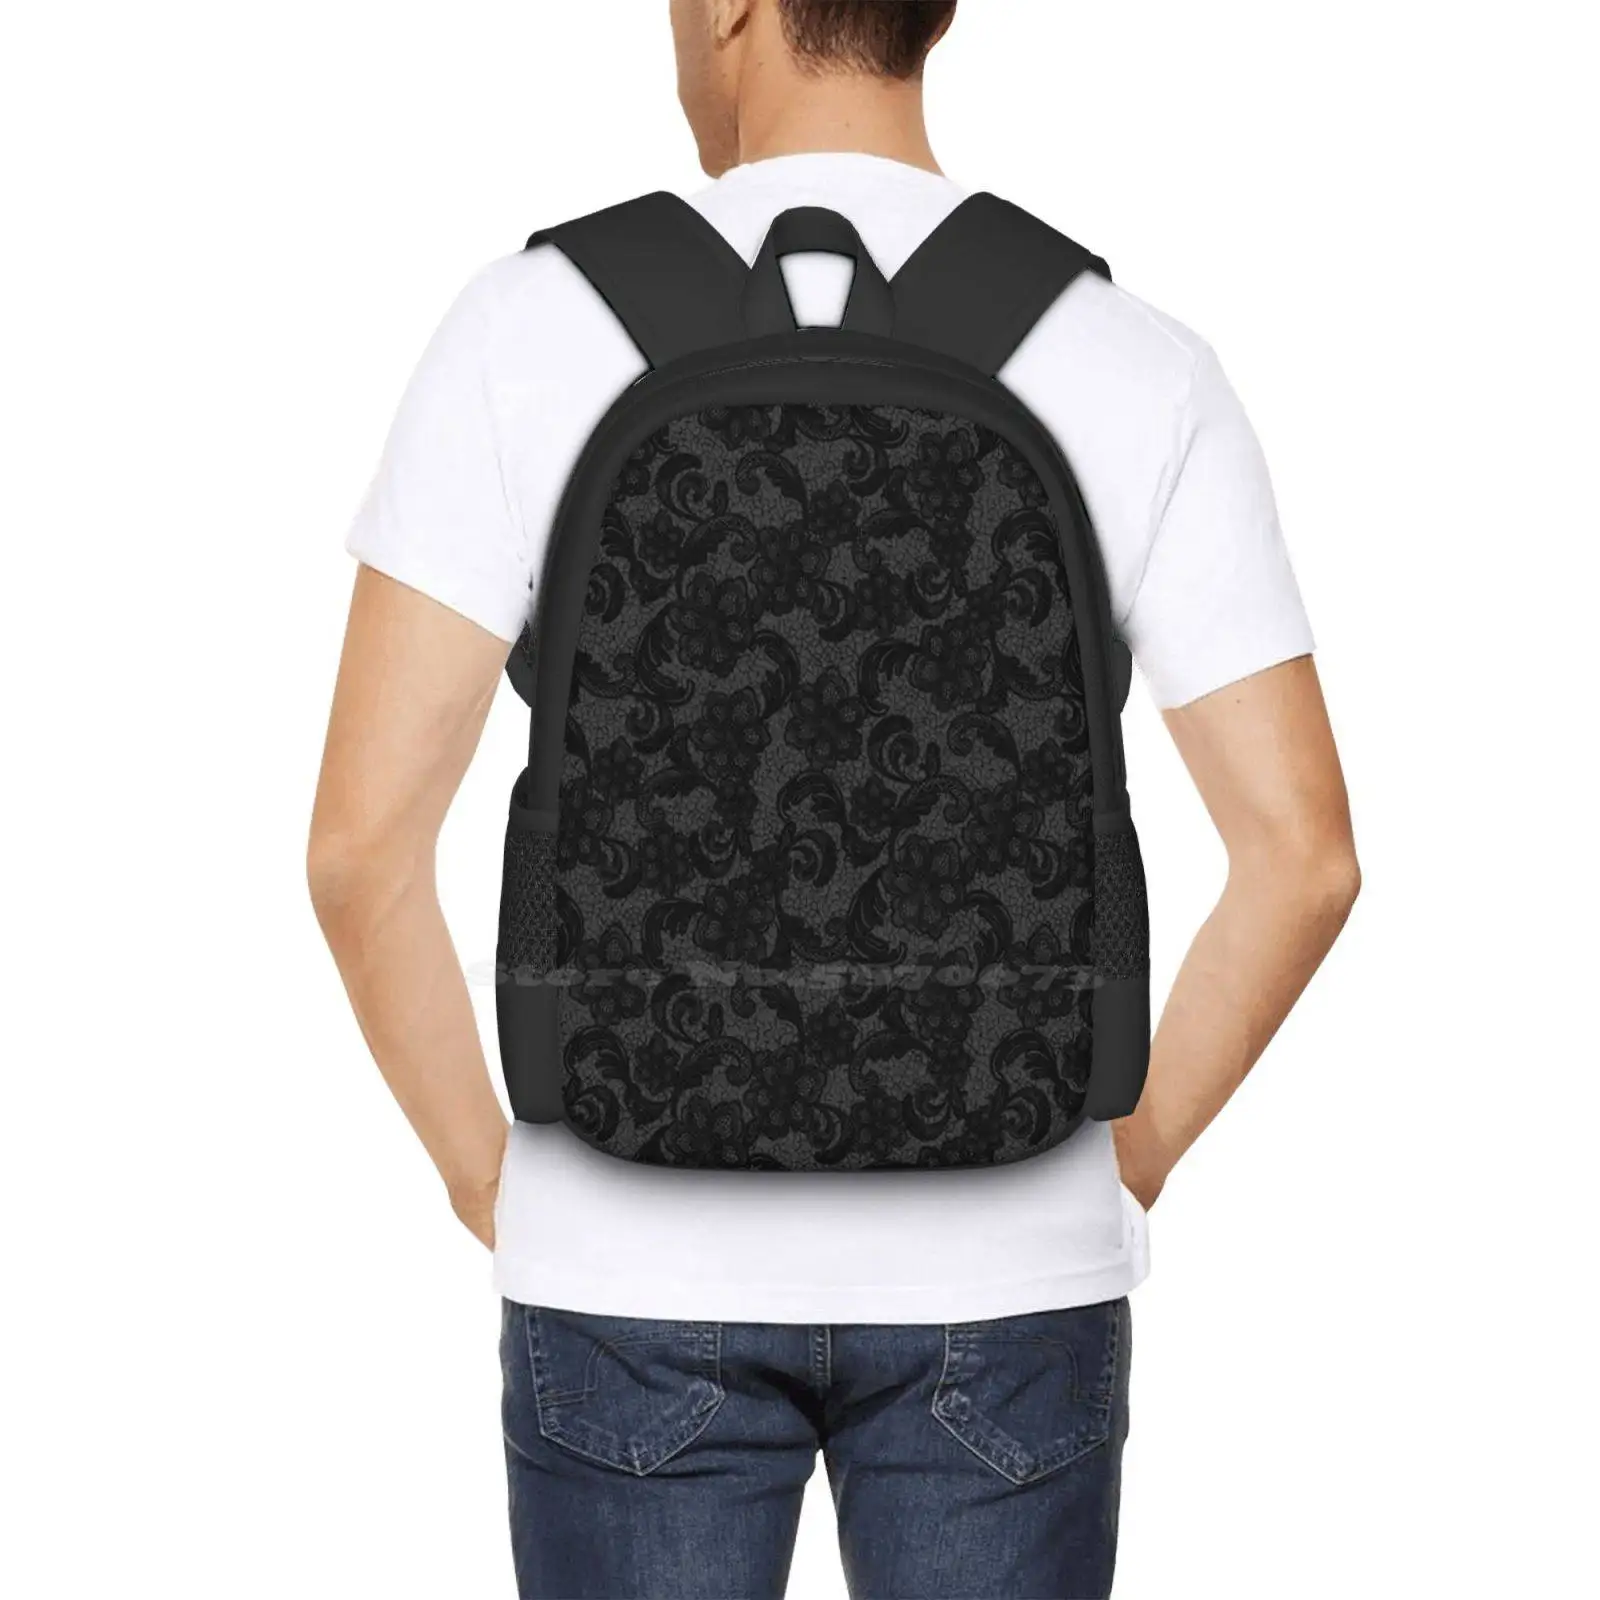 Дизайнерская сумка с черным кружевным узором, Студенческий рюкзак, Черный кружевной узор, Довольно Сексуальный, Винтажный, Декоративный, с цветочным орнаментом, Темный 5